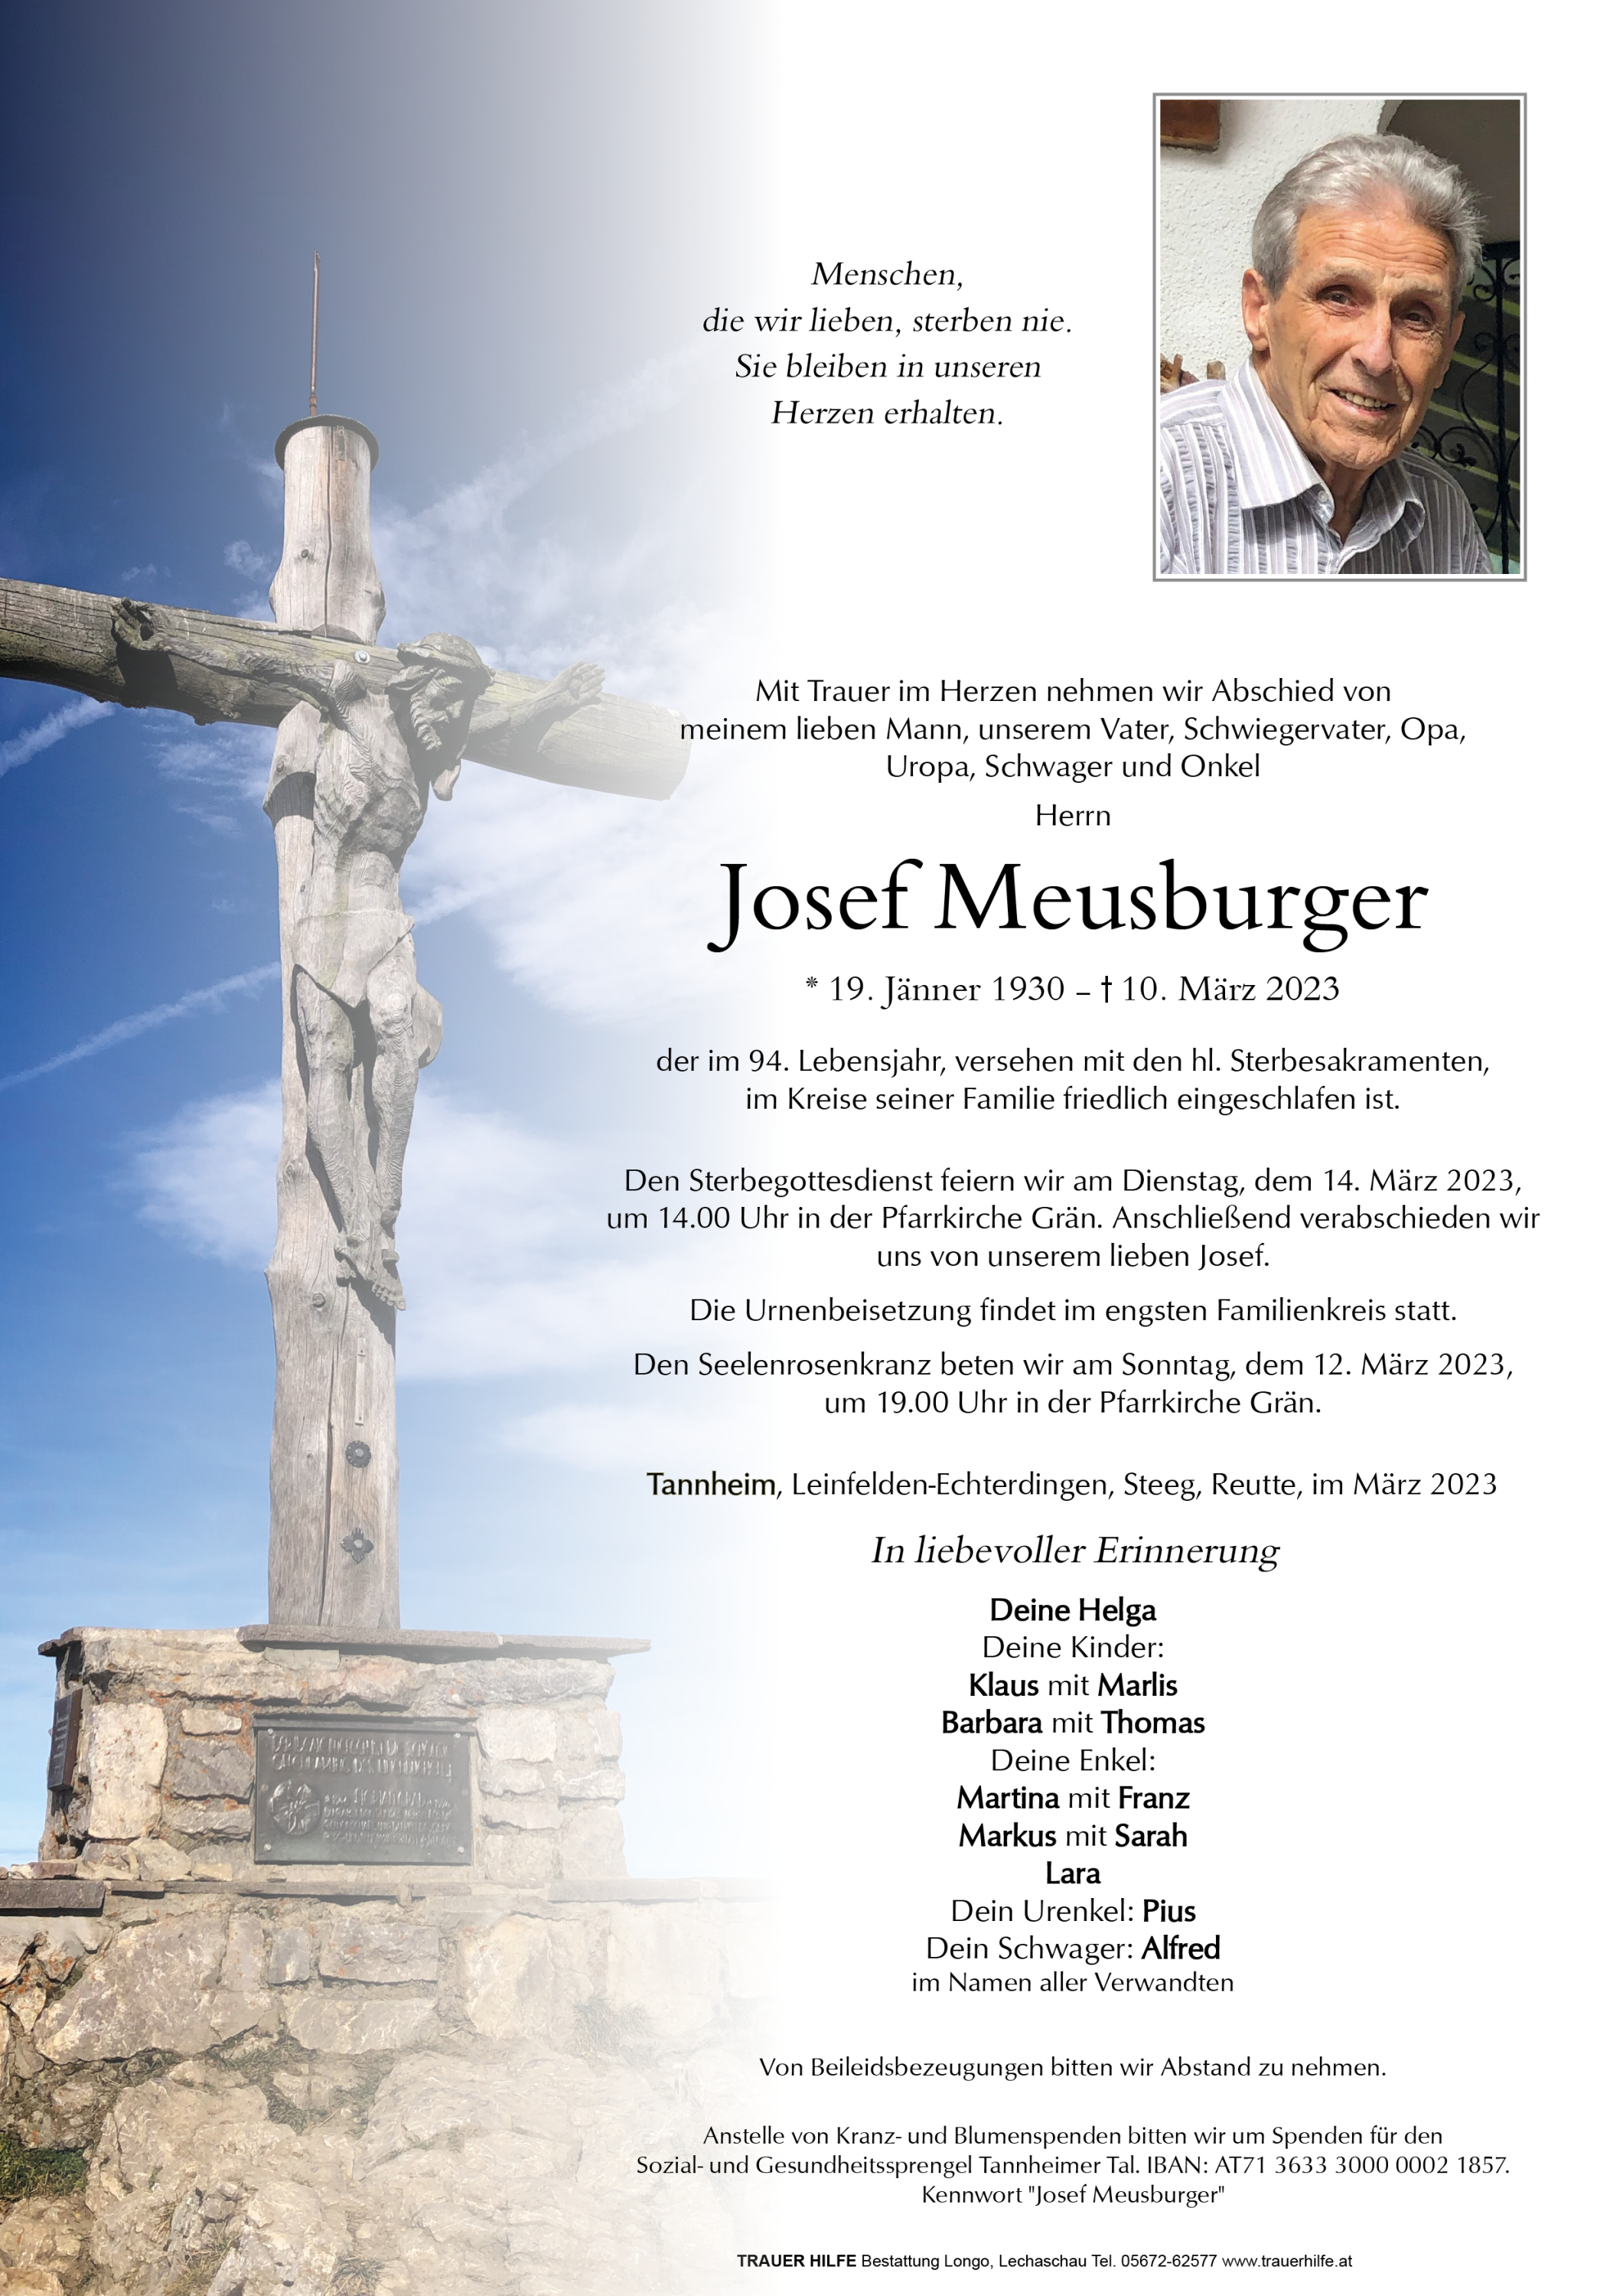 Josef Meusburger